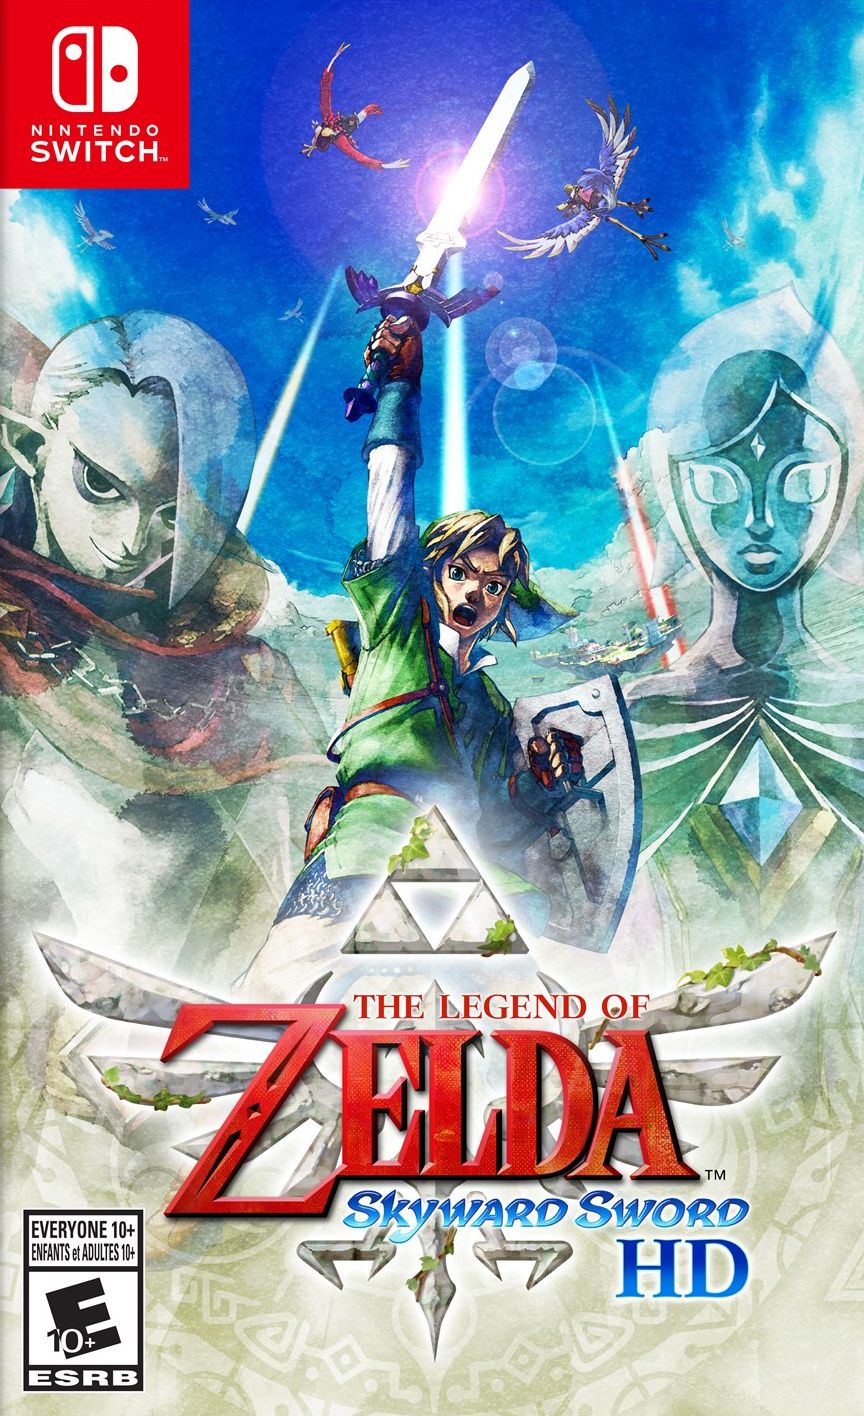 The Legend Of Zelda: Skyward Sword HD Video Game